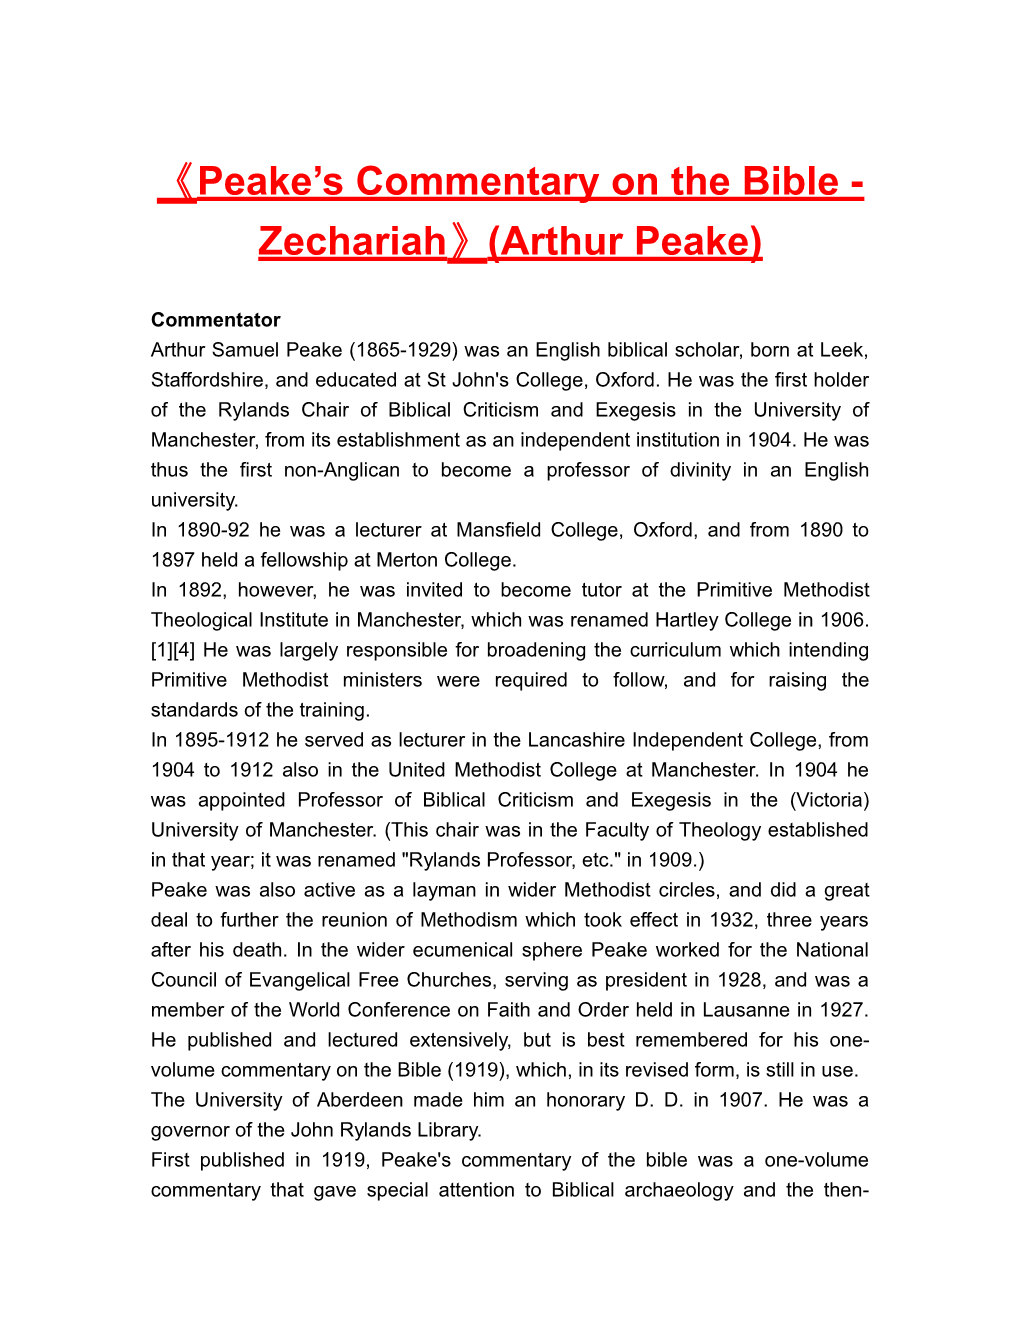 Peake S Commentary on the Bible - Zechariah (Arthur Peake)